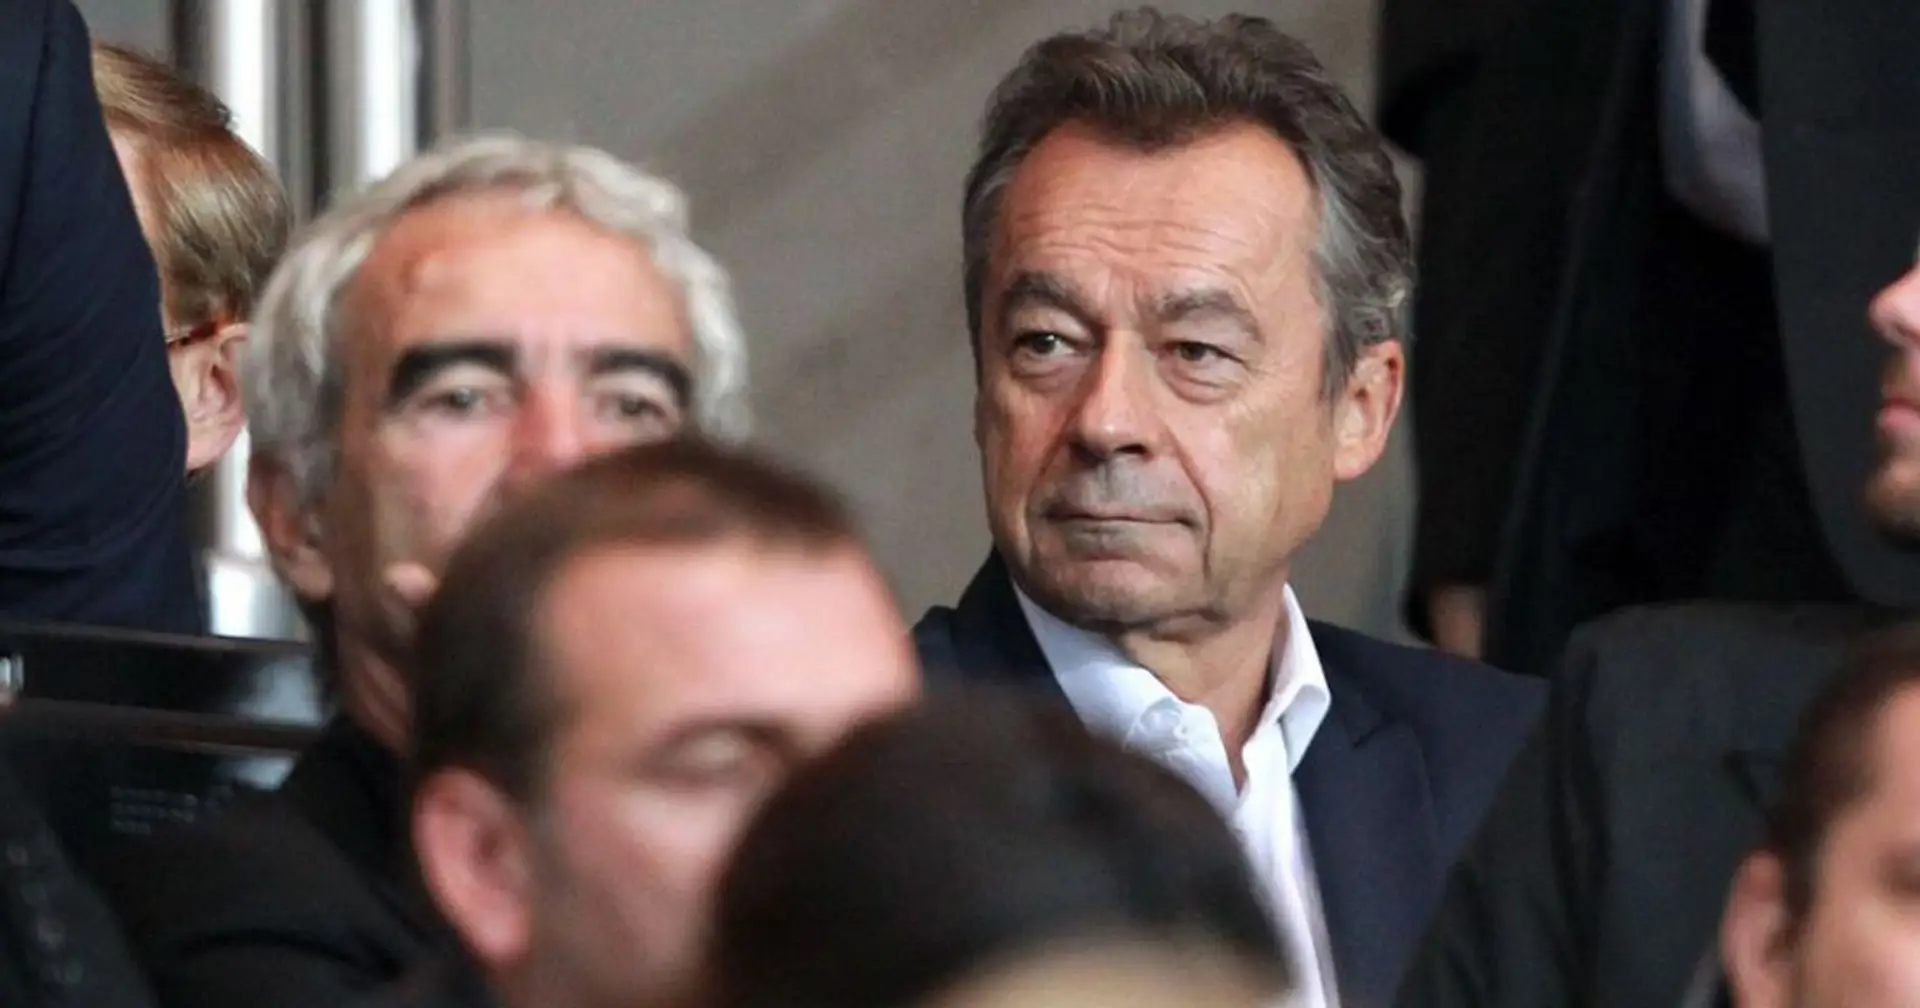 Michel Denisot est pressenti pour devenir le nouveau président de la LFP, Nathalie Boy de la Tour ne se représentera pas